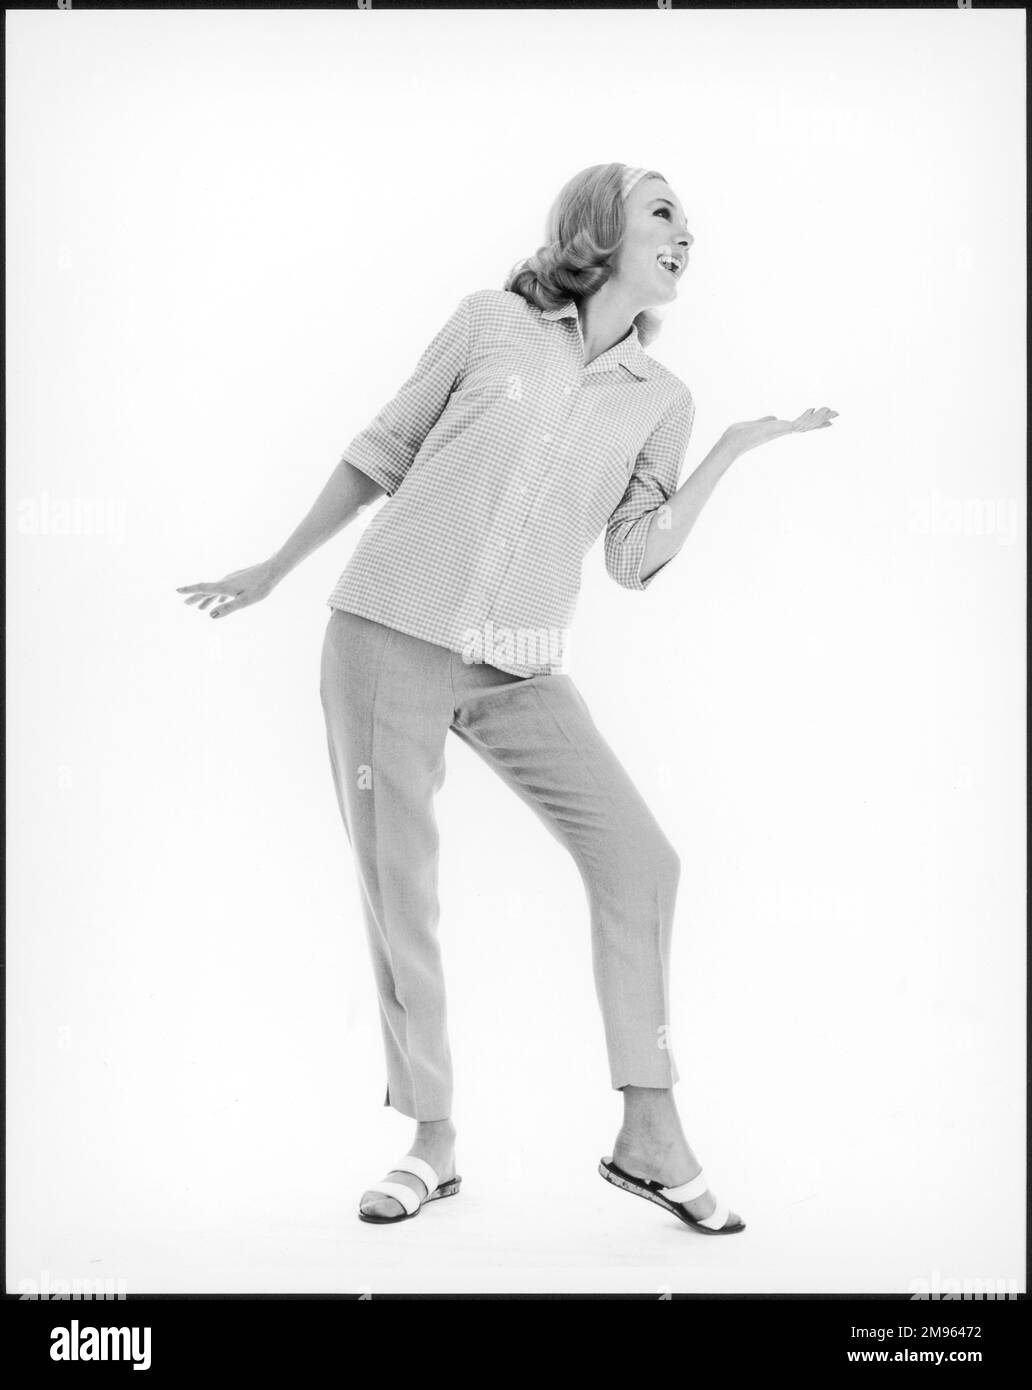 Photographie intégrale d'un modèle des années 60 portant une chemise à carreaux, un pantacourt et des sandales Banque D'Images